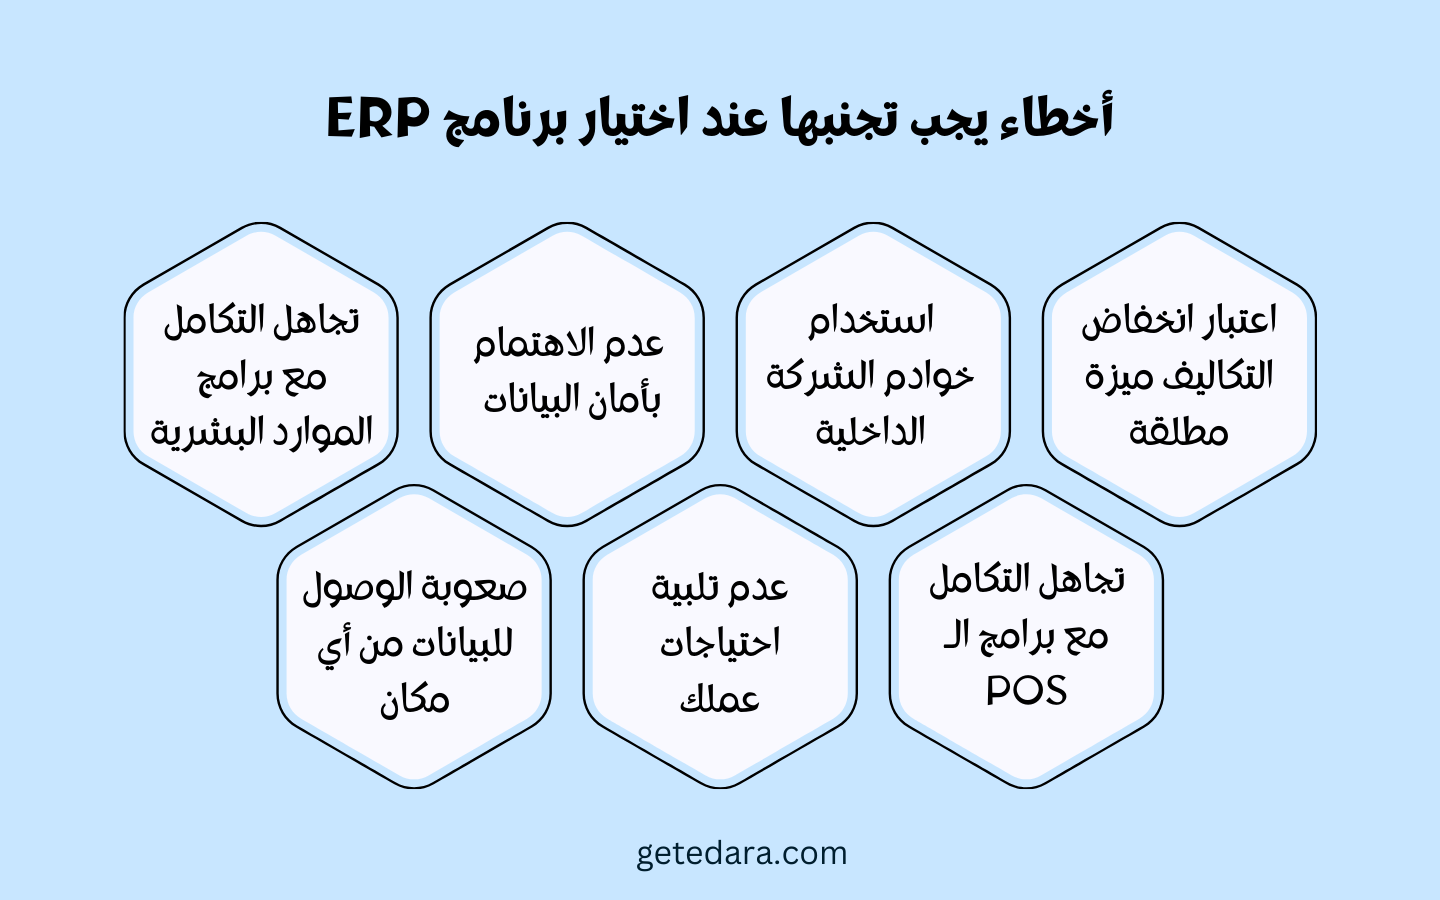 أخطاء يجب تجنبها عند اختيار برنامج ERP